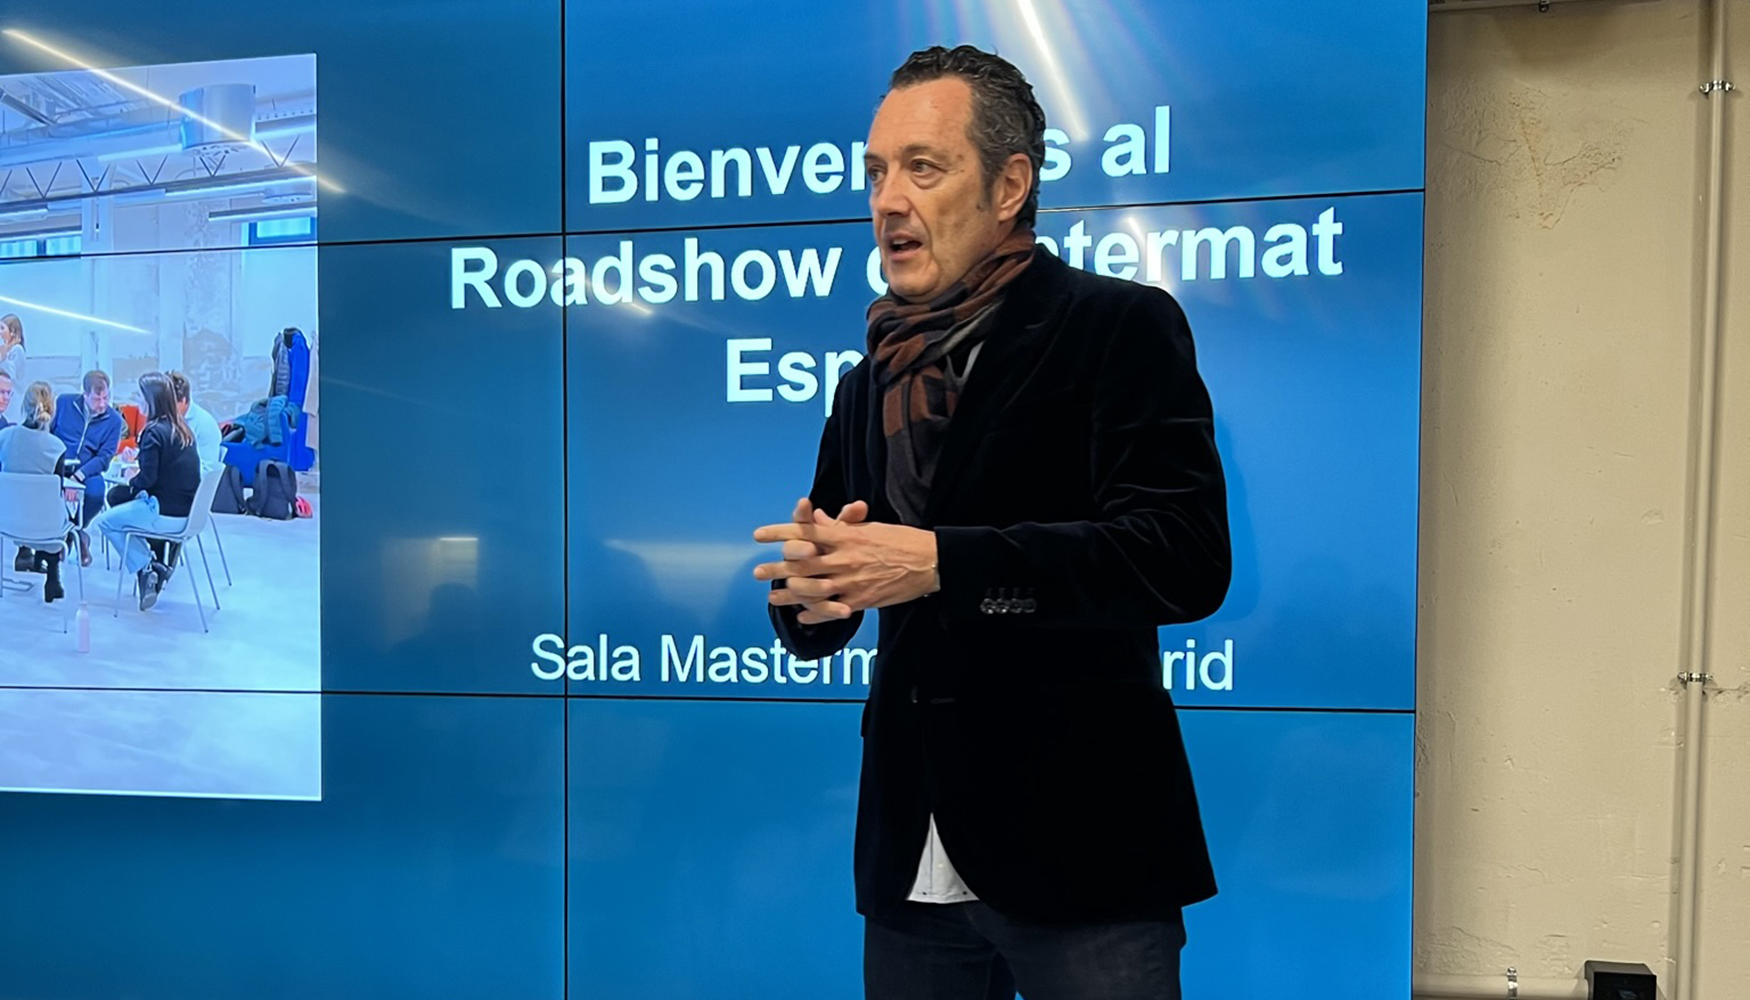 Jorge Rodrguez Taboadela, delegado de Promosalons y representante de Intermat en Espaa